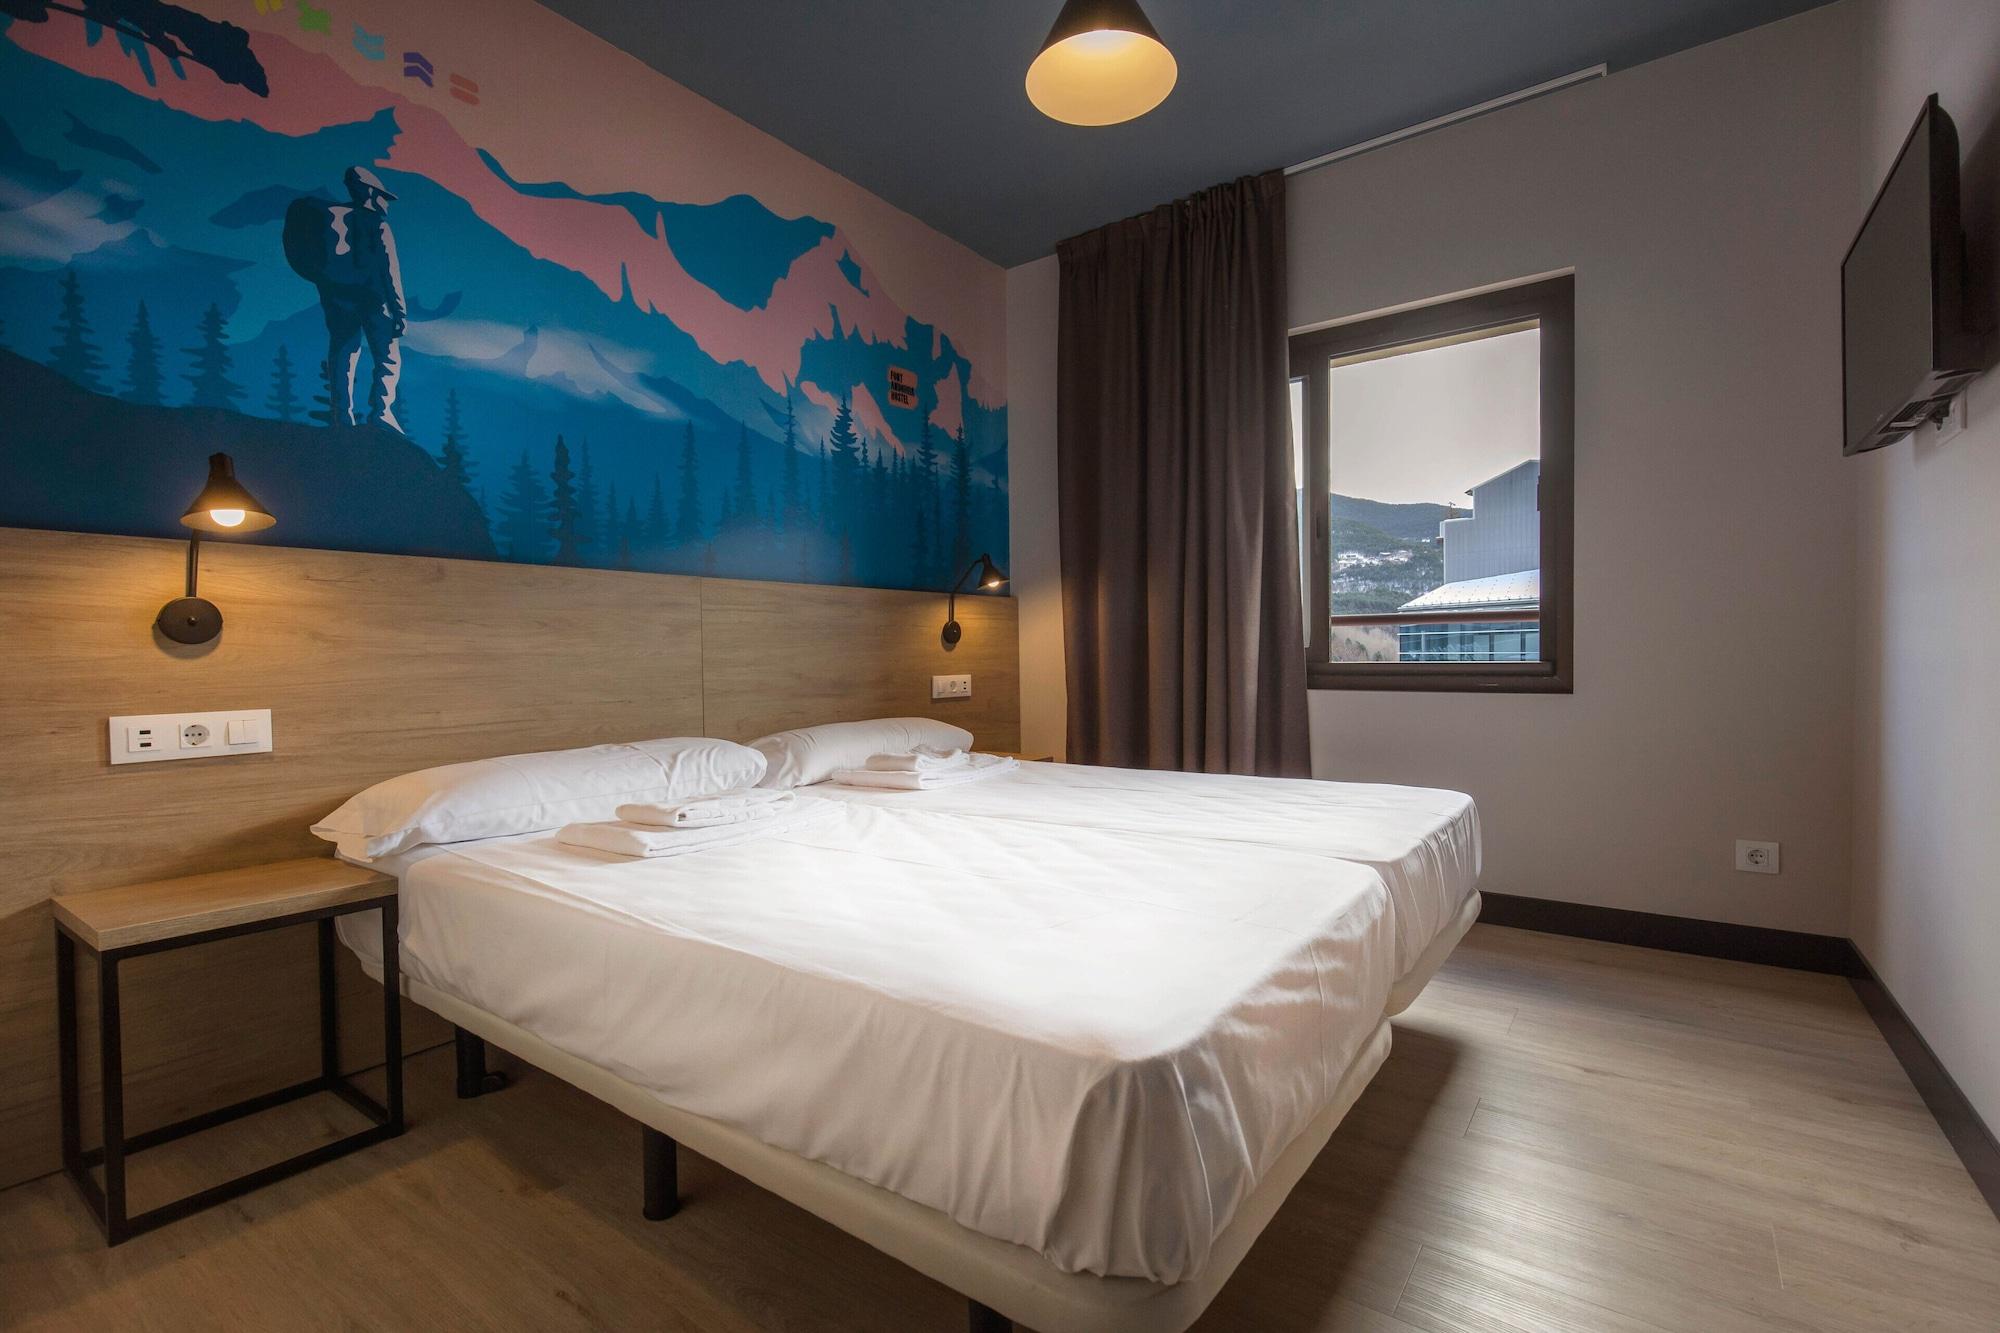 לה מאסנה Font Andorra Hostel מראה חיצוני תמונה